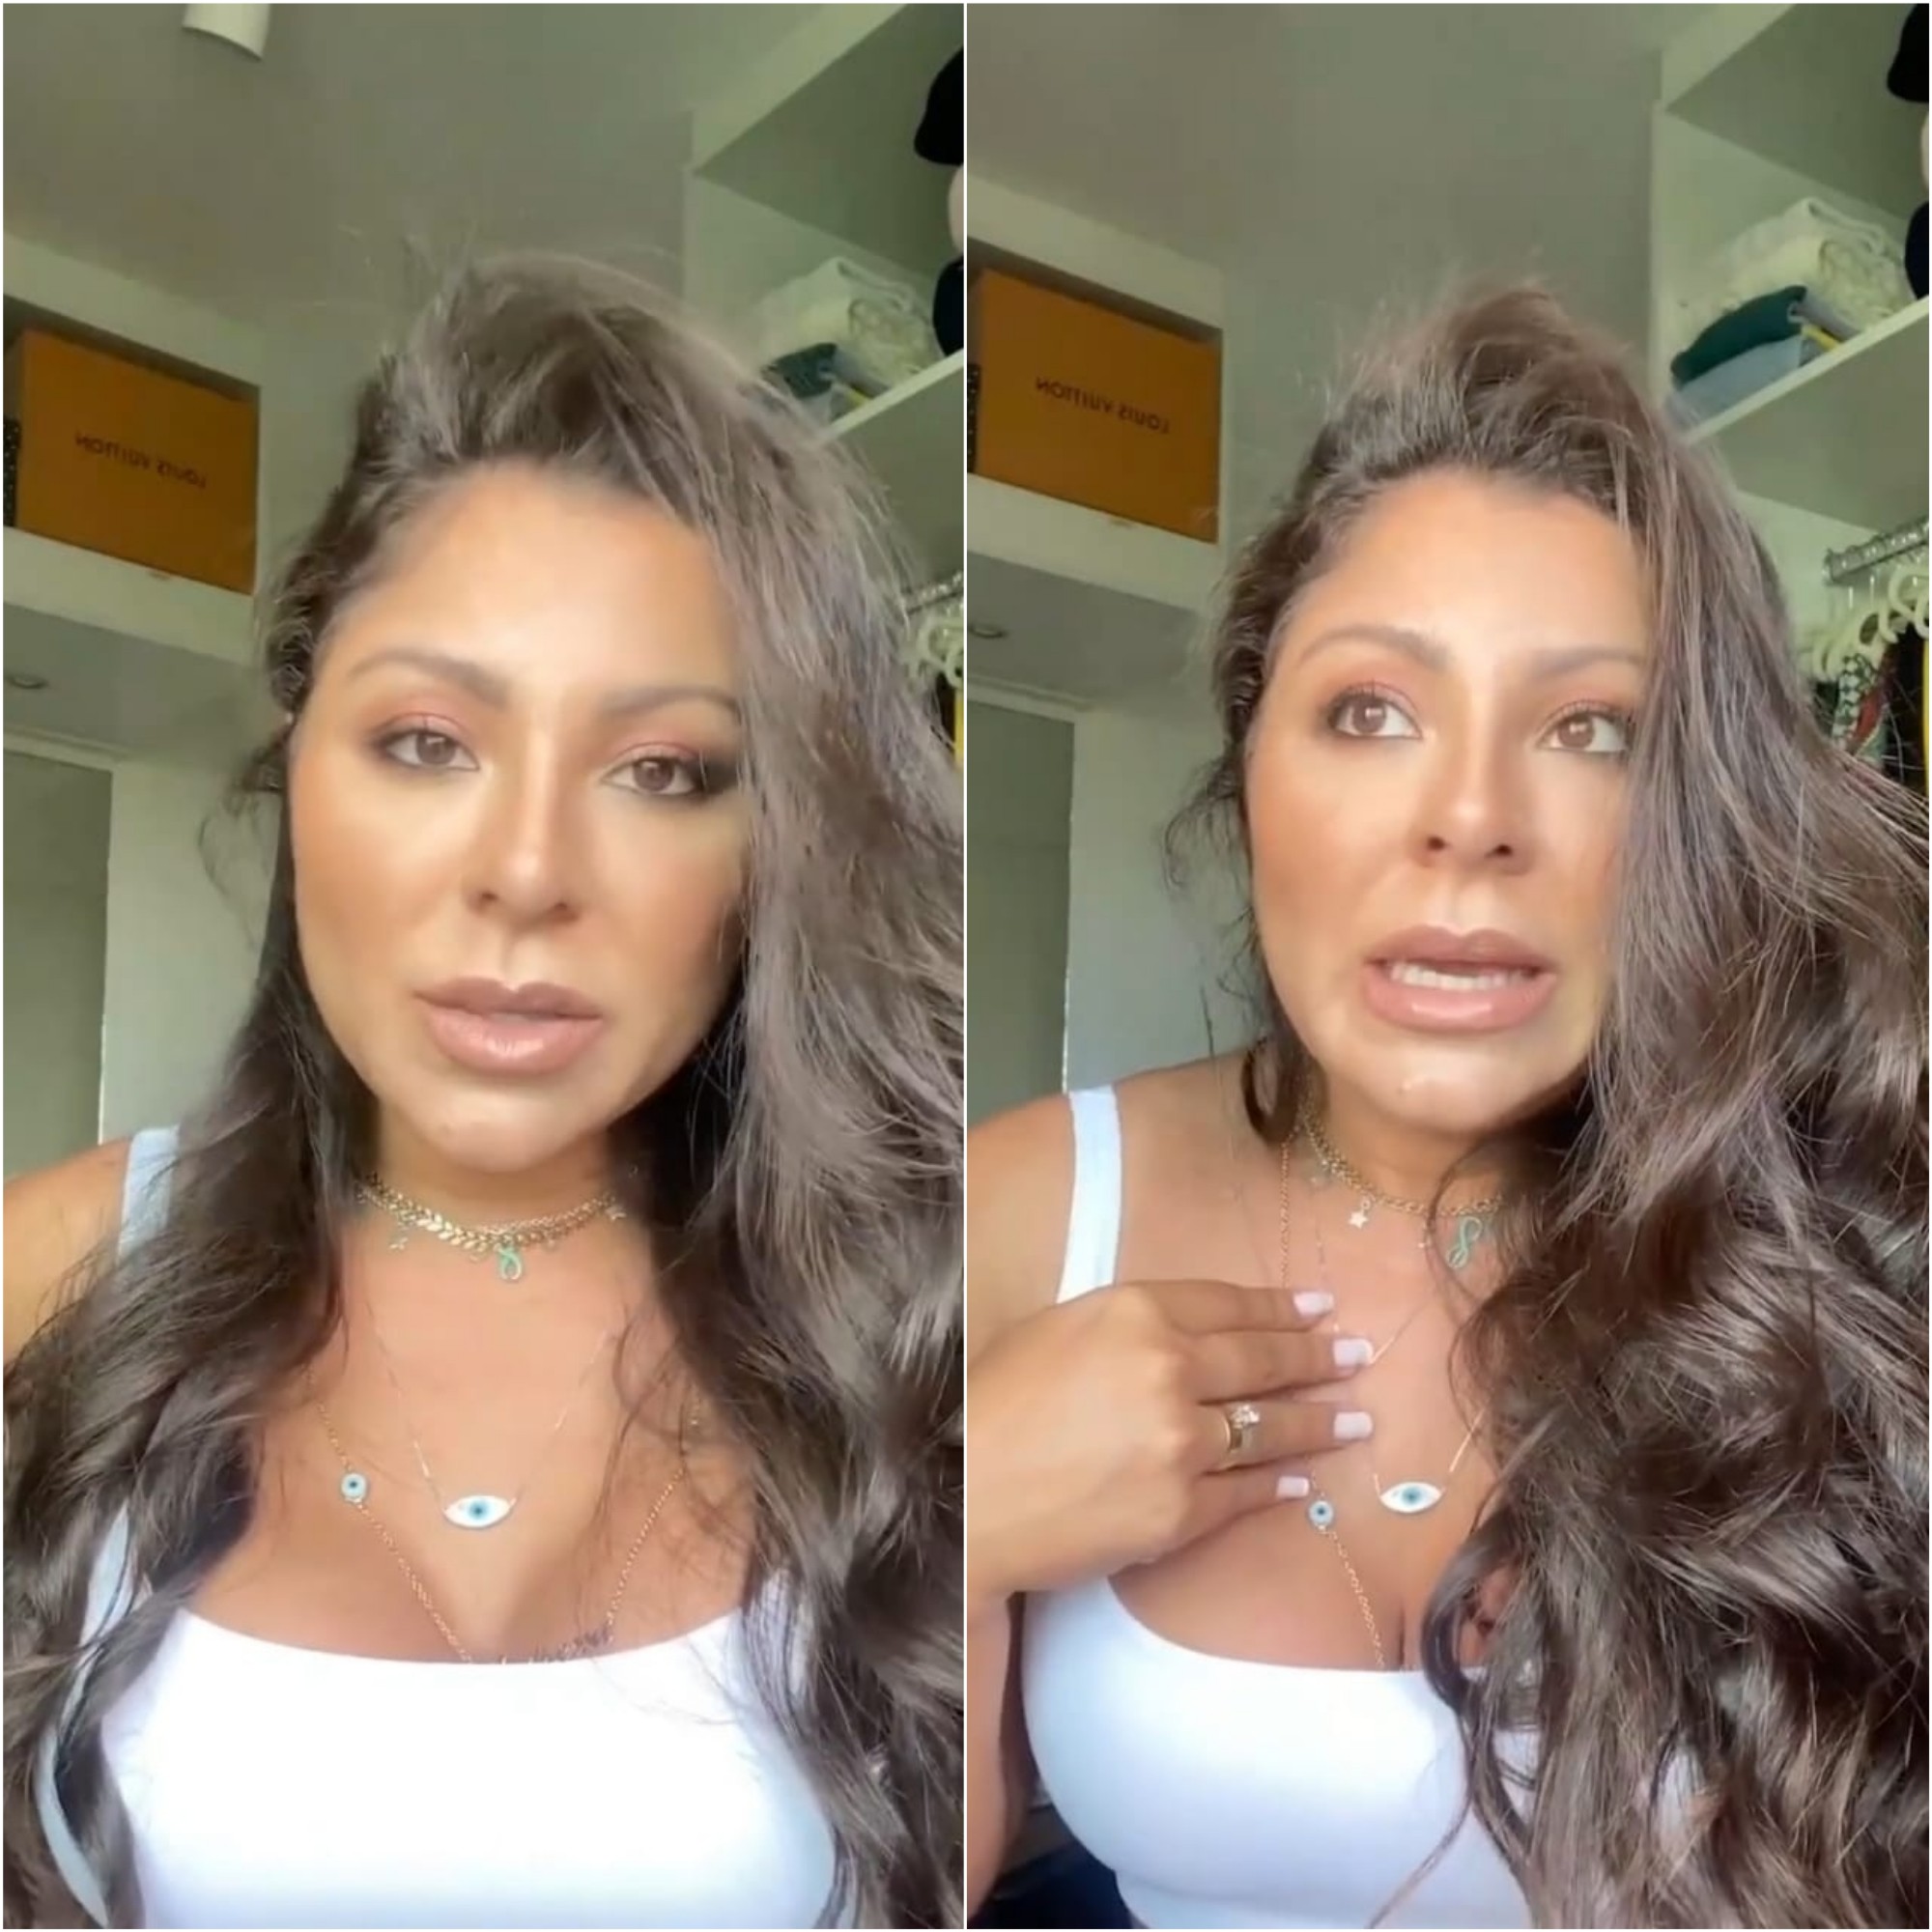 Em vídeo, Andressa Miranda afirma que não fez lipoaspiração, que emagreceu com o próprio esforço (Foto: Reprodução/Instagram)